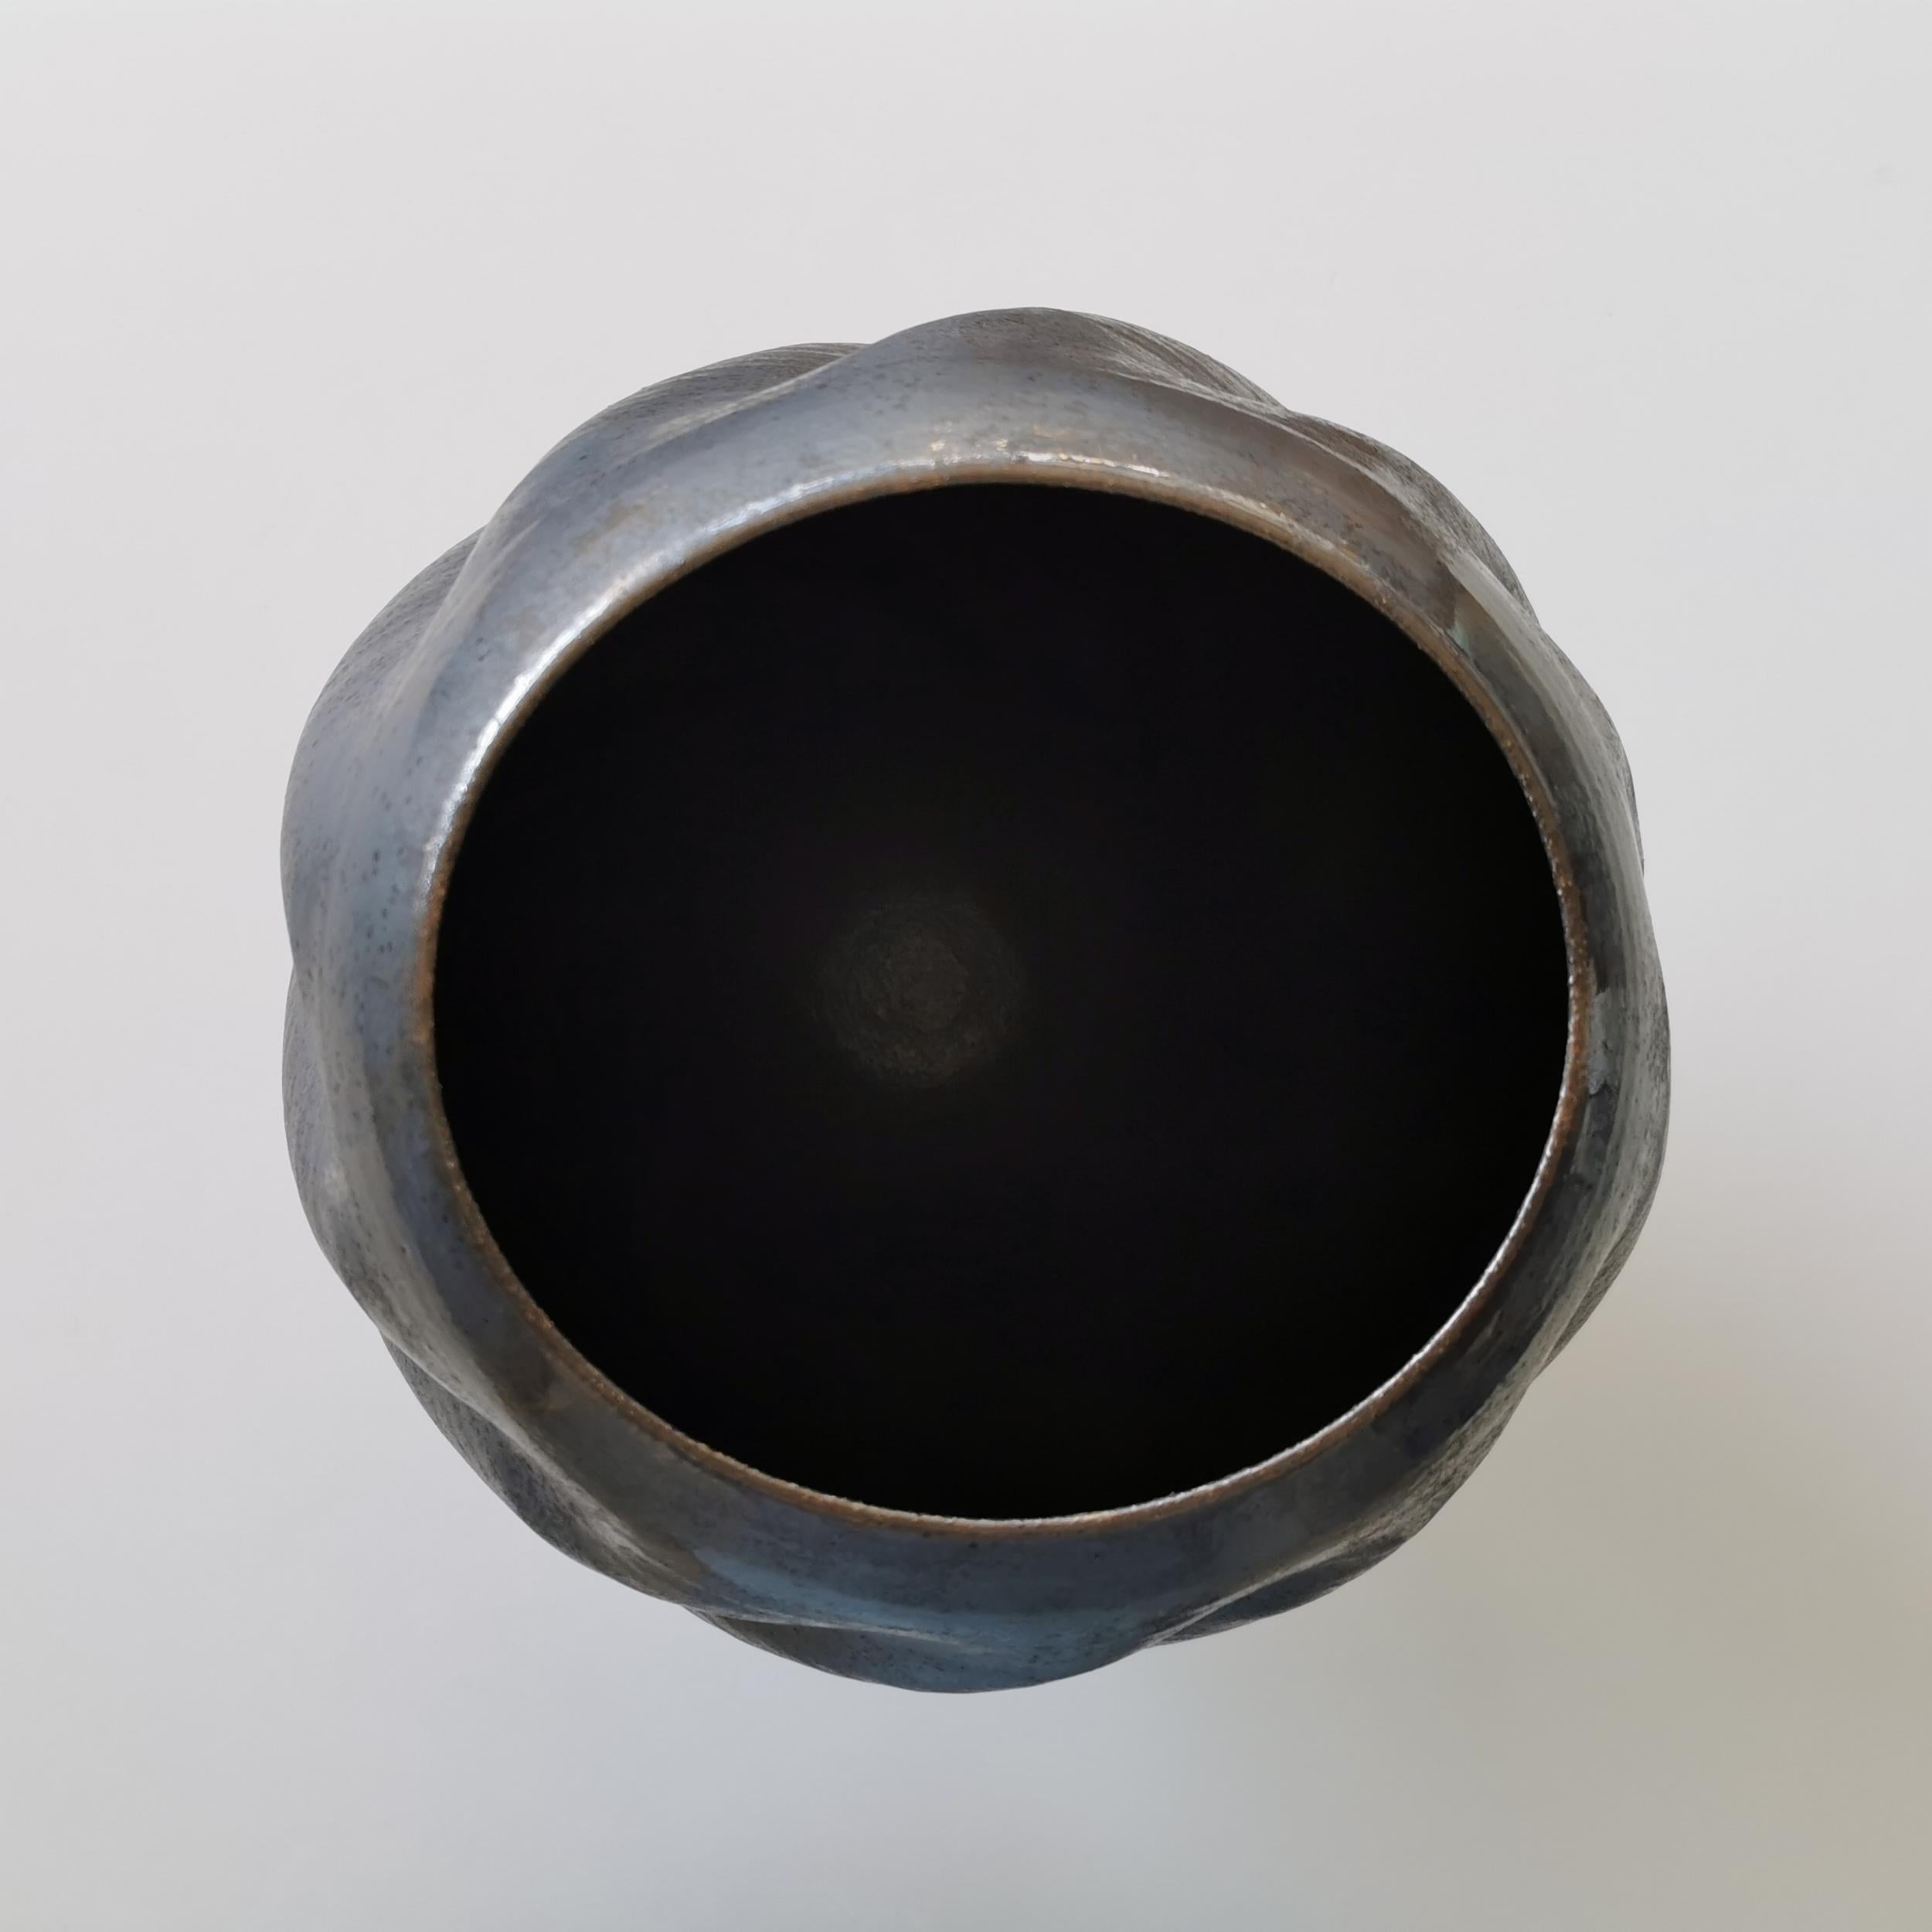 Unique Ceramic Sculpture Vessel N.55, Black Wave Form, Objet d'Art For Sale 1